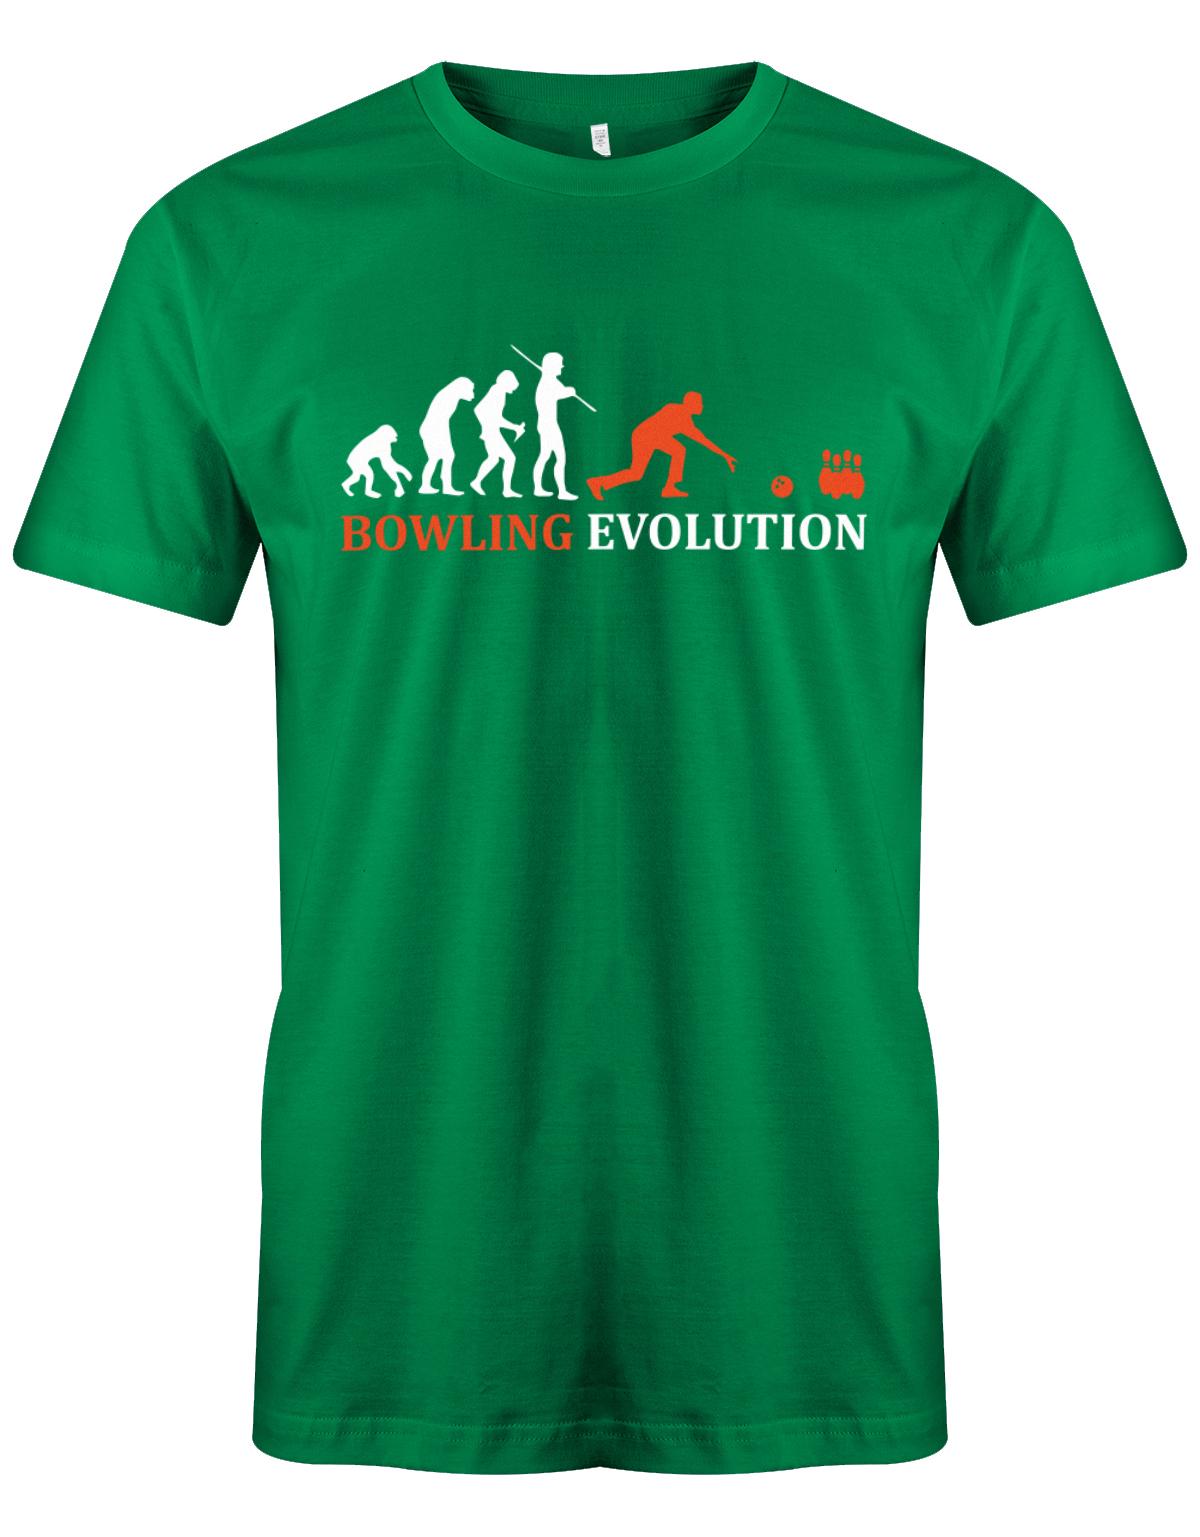 Bowling-Evolution-Bowler-Herren-Shirt-Gruen